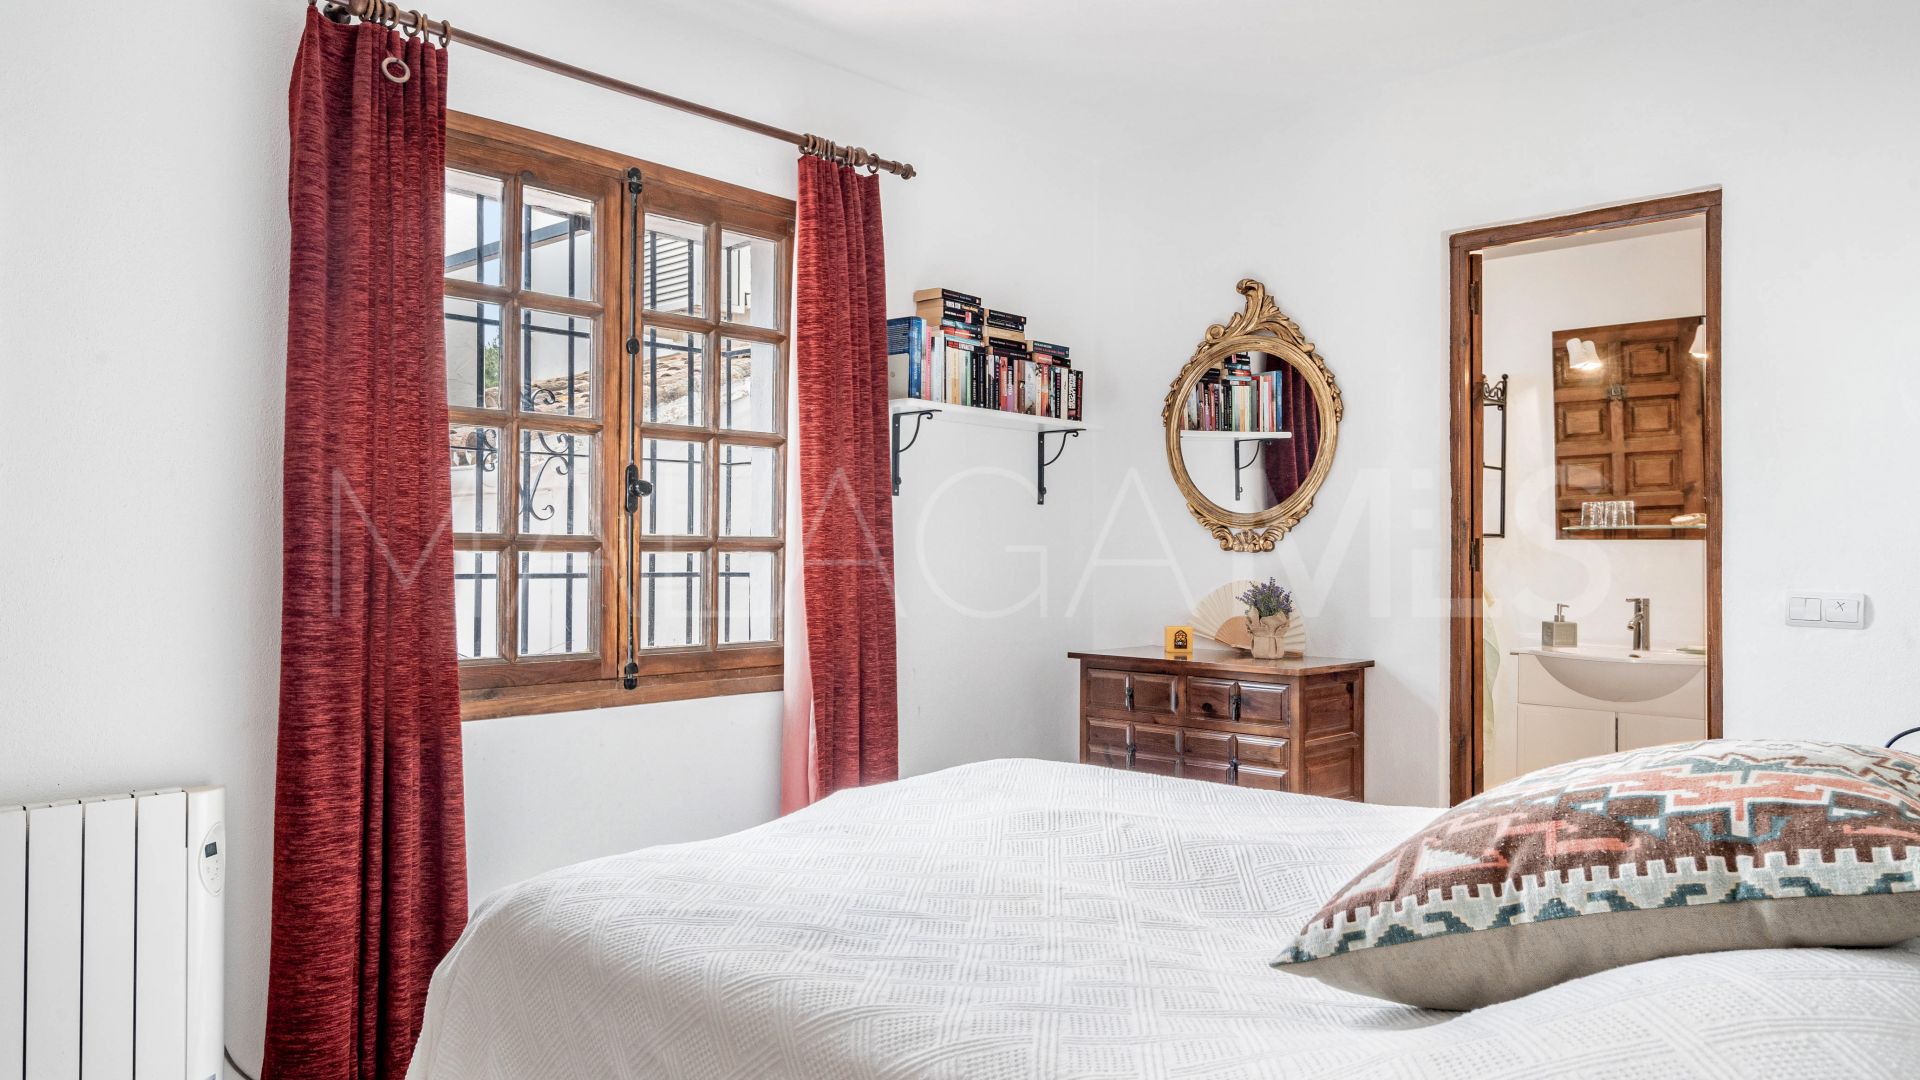 Mijas La Nueva, villa de 3 bedrooms for sale